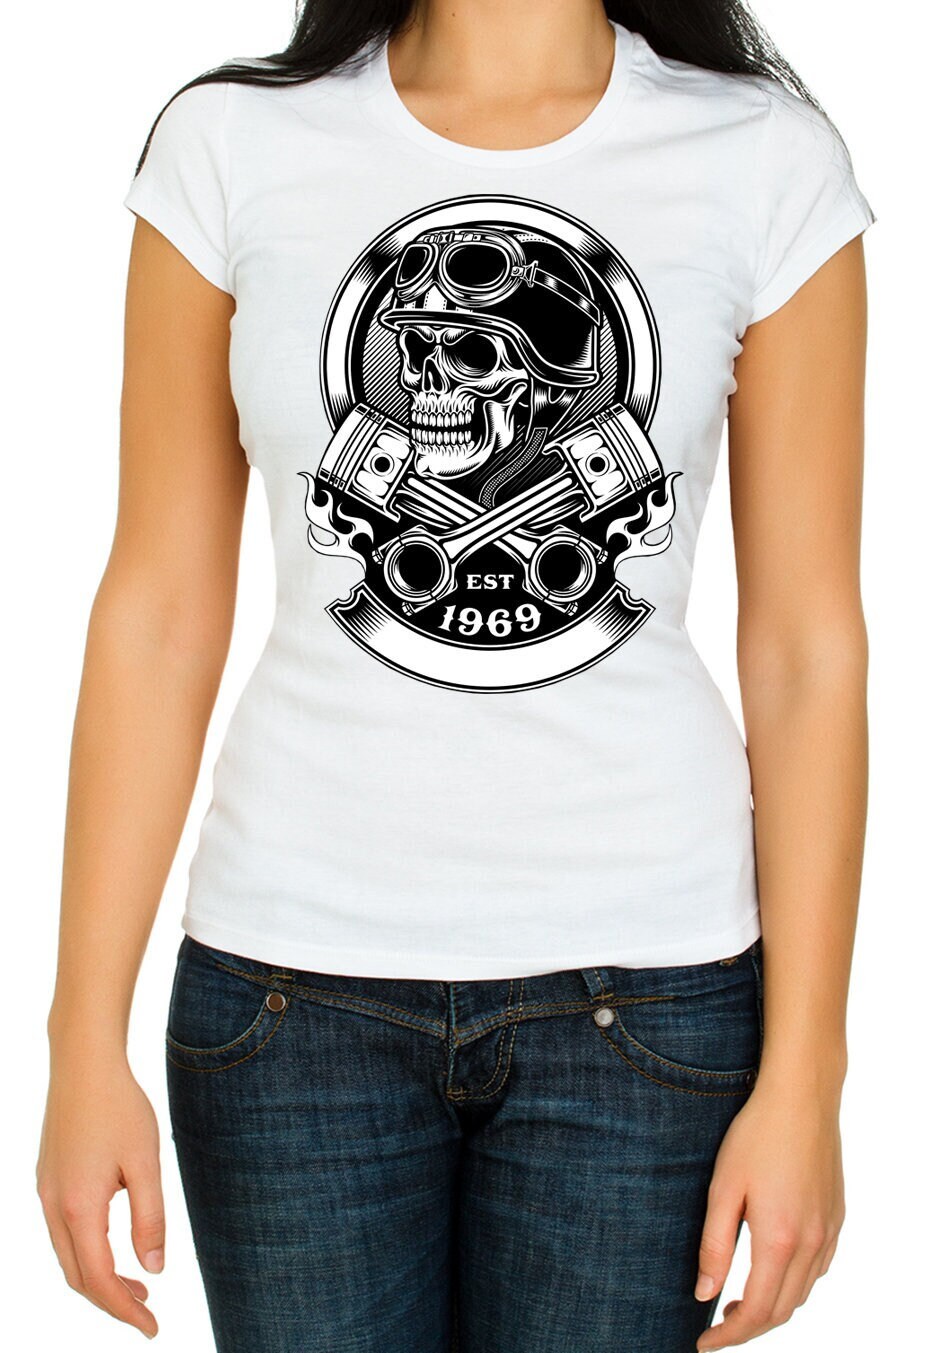 Est 1969 Skull Motorcycle Short Sleeve White Men's t Shirt K1014 